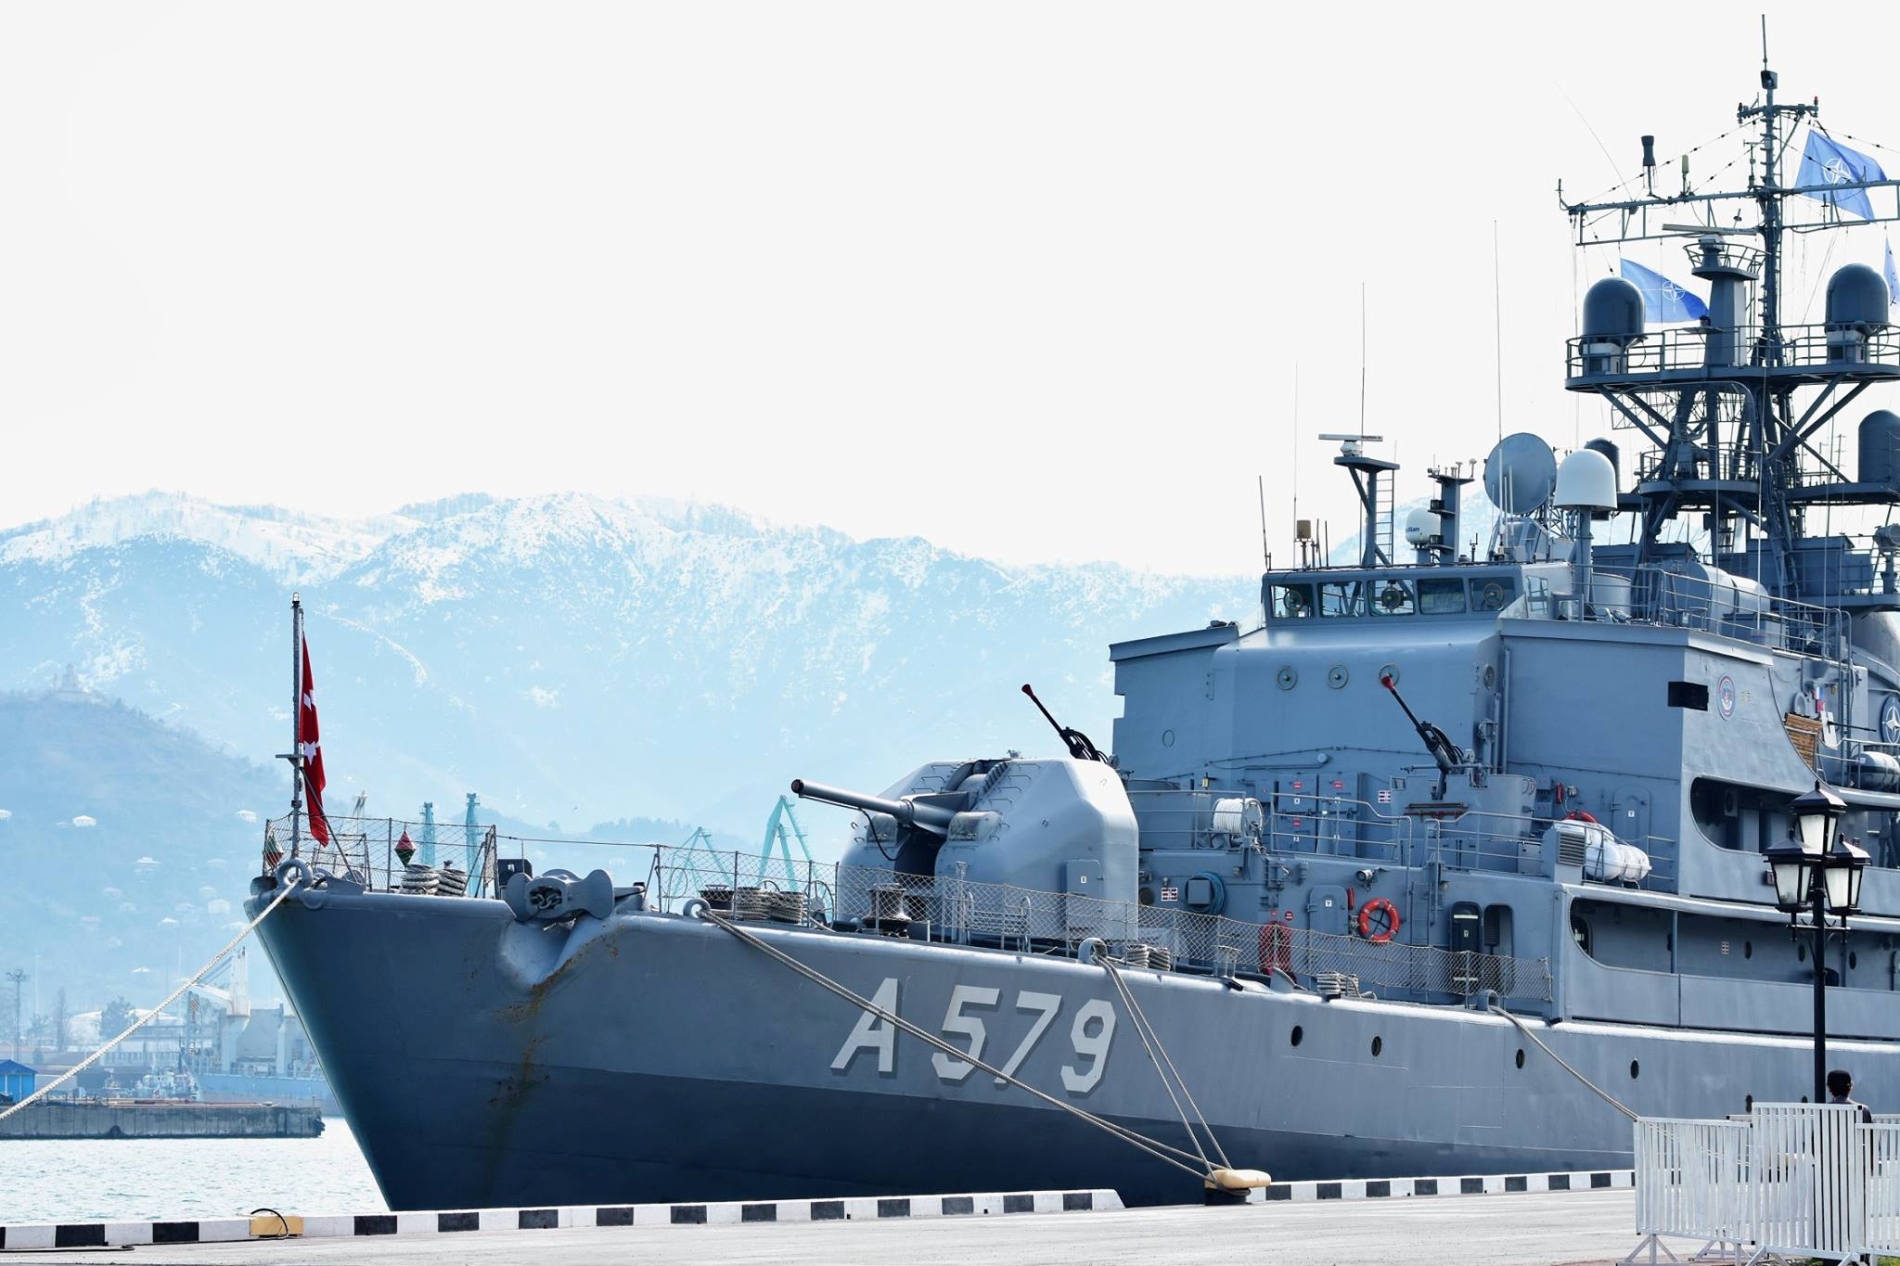 Վրաստանի տարածքային ջրեր է մտել ՆԱՏՕ-ի հակաականային նավերի երկրորդ մշտական միավորումը